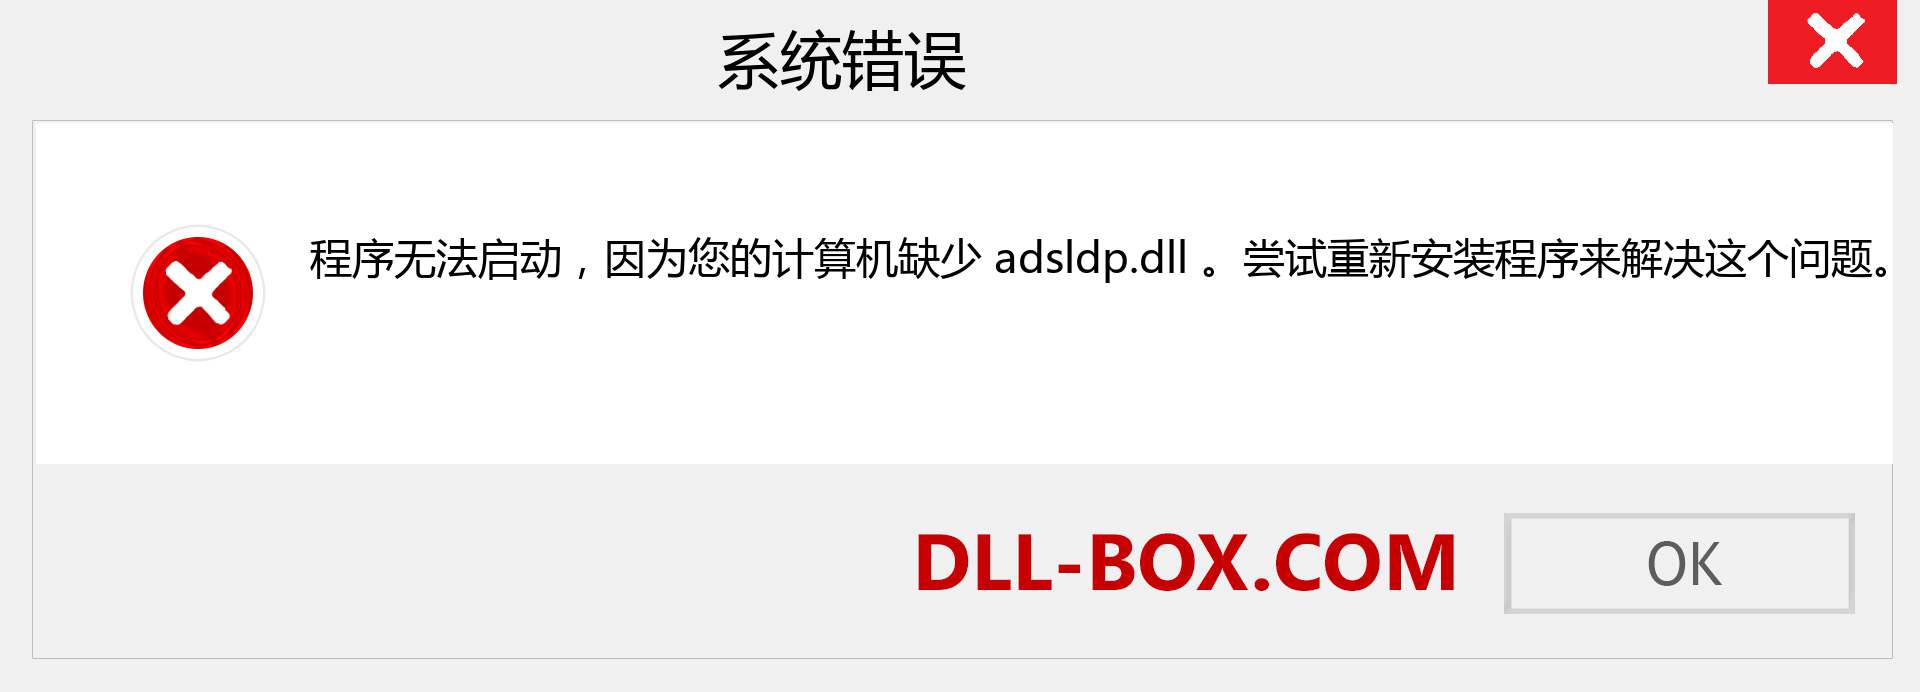 adsldp.dll 文件丢失？。 适用于 Windows 7、8、10 的下载 - 修复 Windows、照片、图像上的 adsldp dll 丢失错误